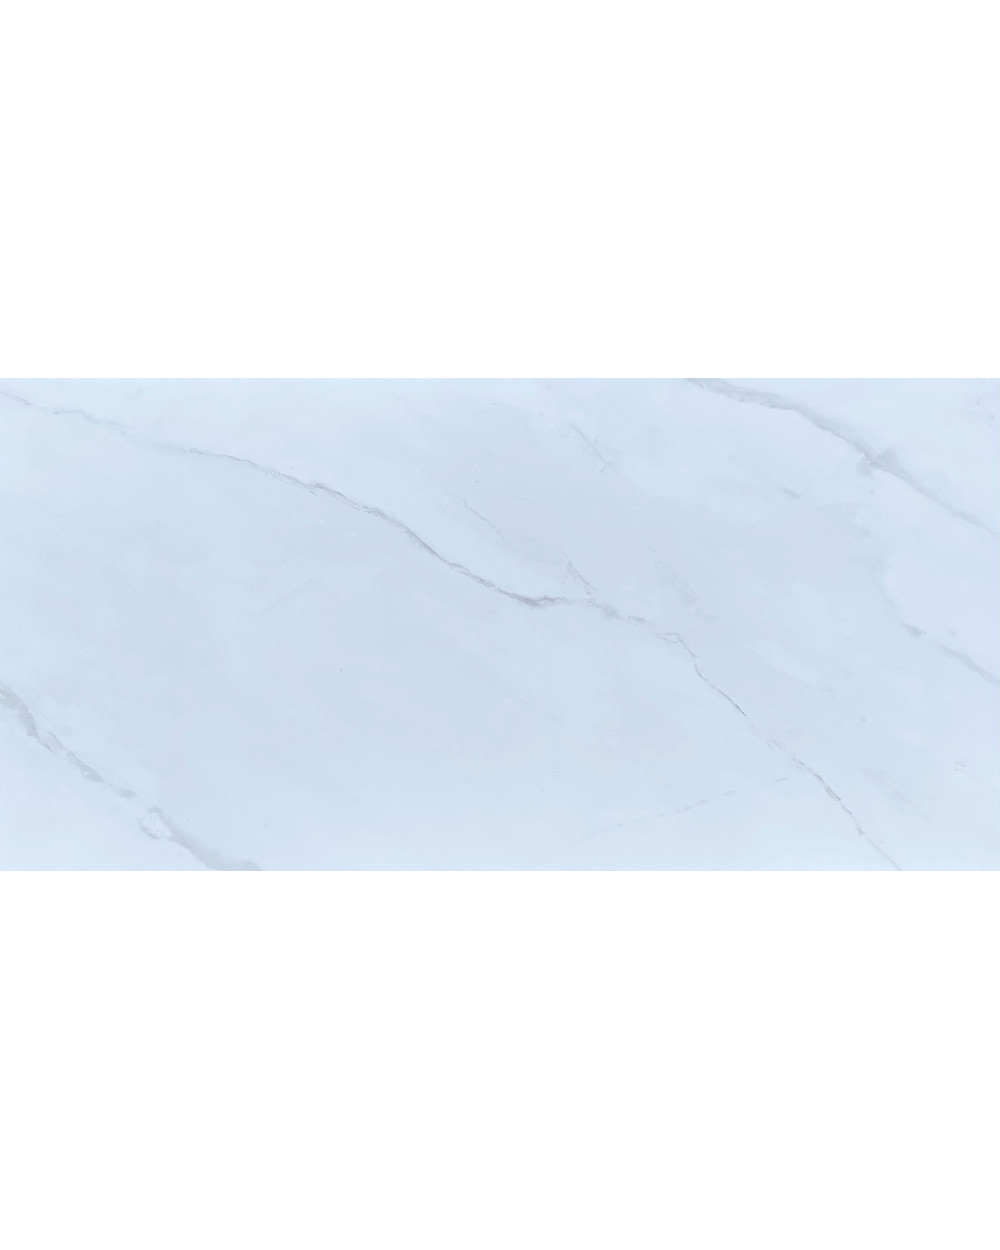 Fliesen Sonderangebot: Weiße Marmoroptik Fliesen mit grauen Adern | Mega Günstig